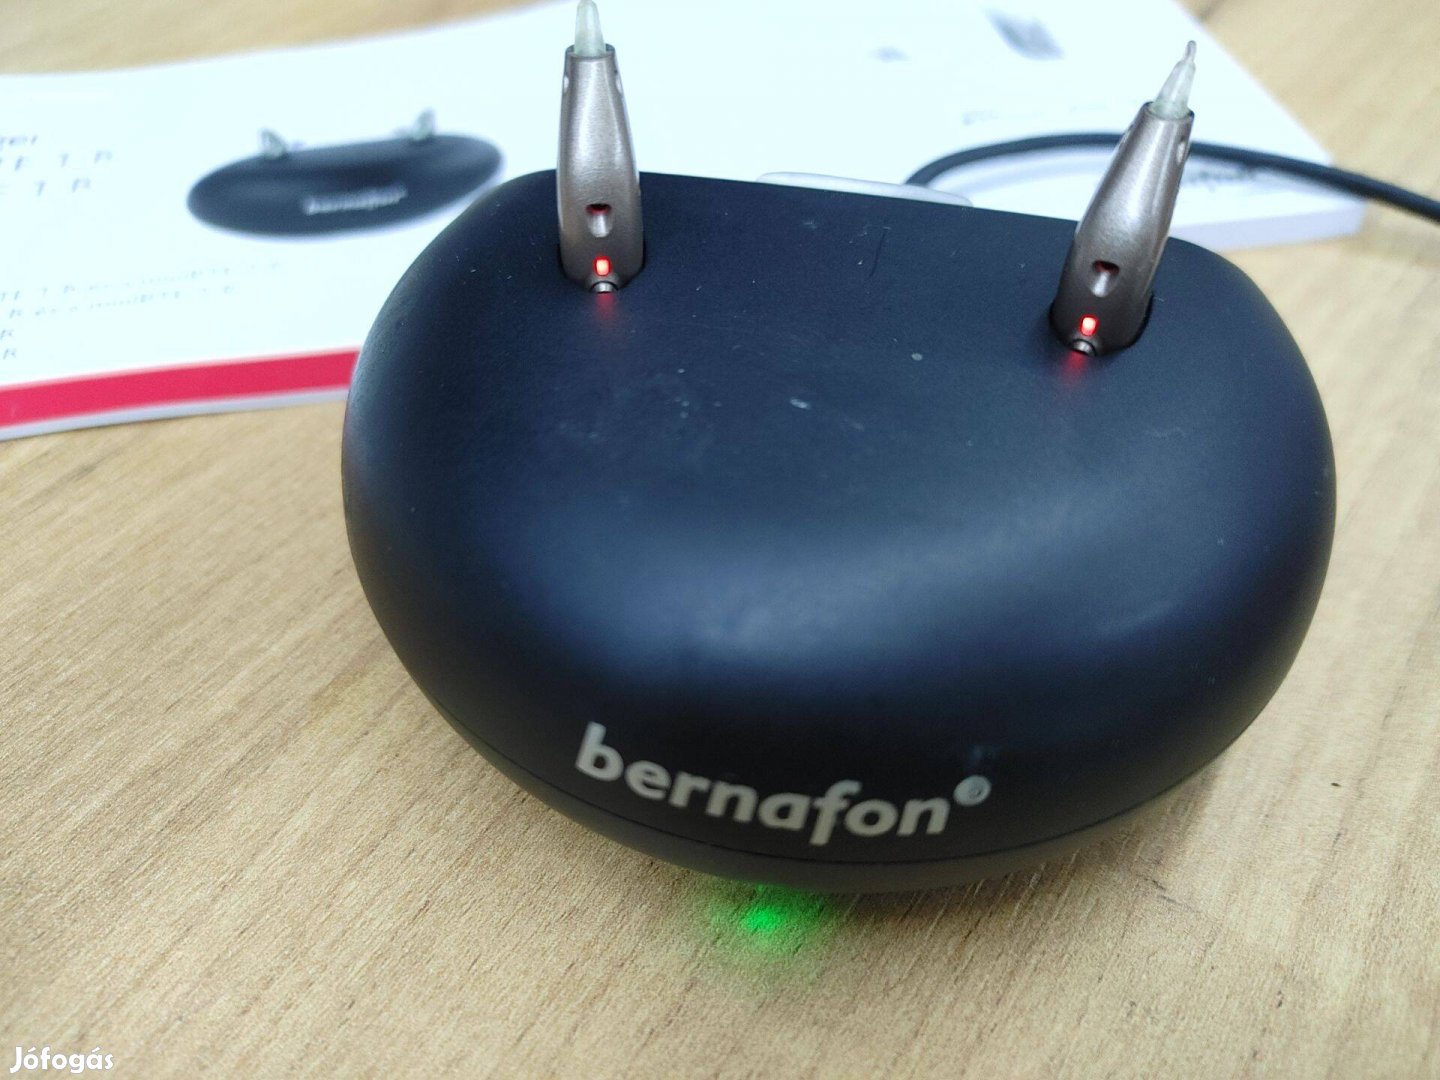 Bernafon Viron hallókészülék